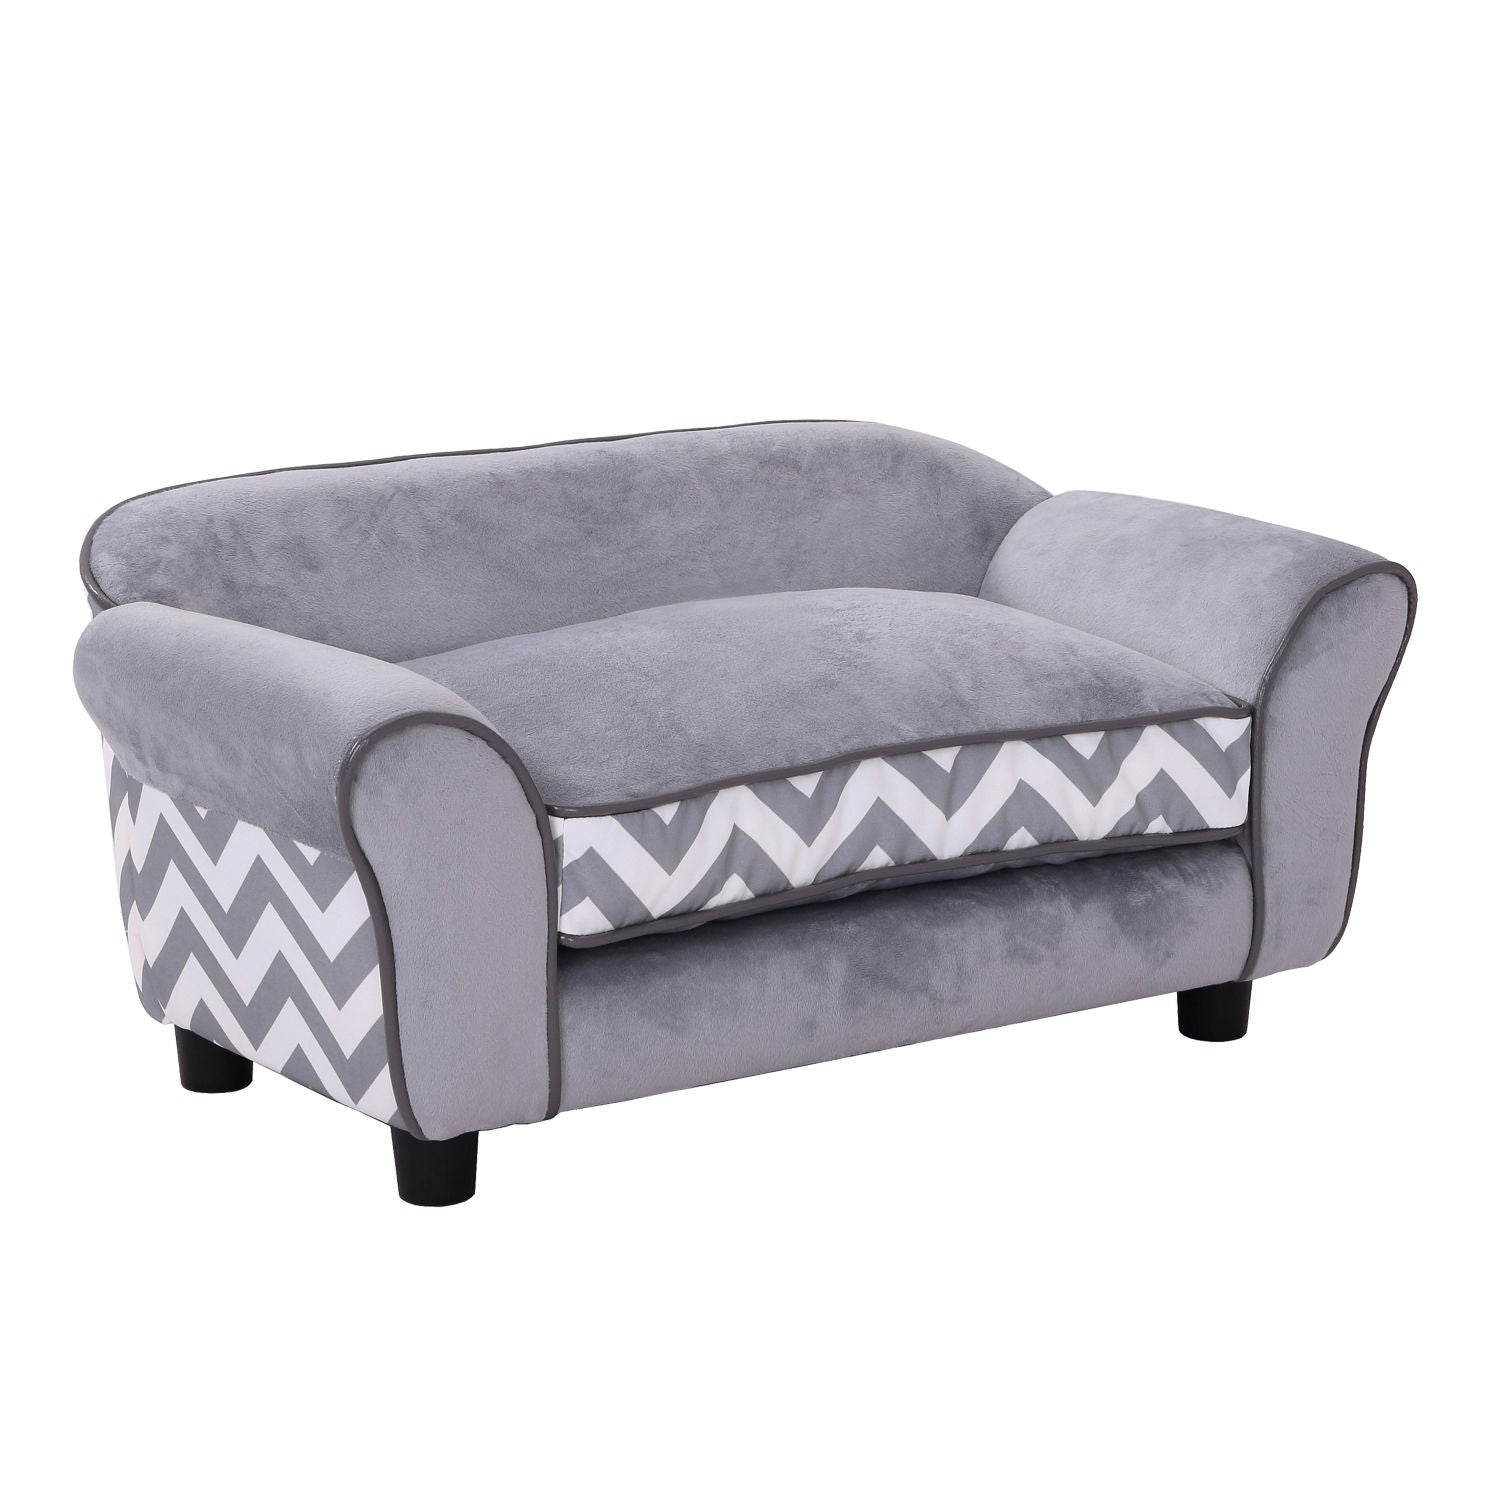 Nancy's Annis Lake Dog Sofa - Gray - Washable dog bed - Velvet